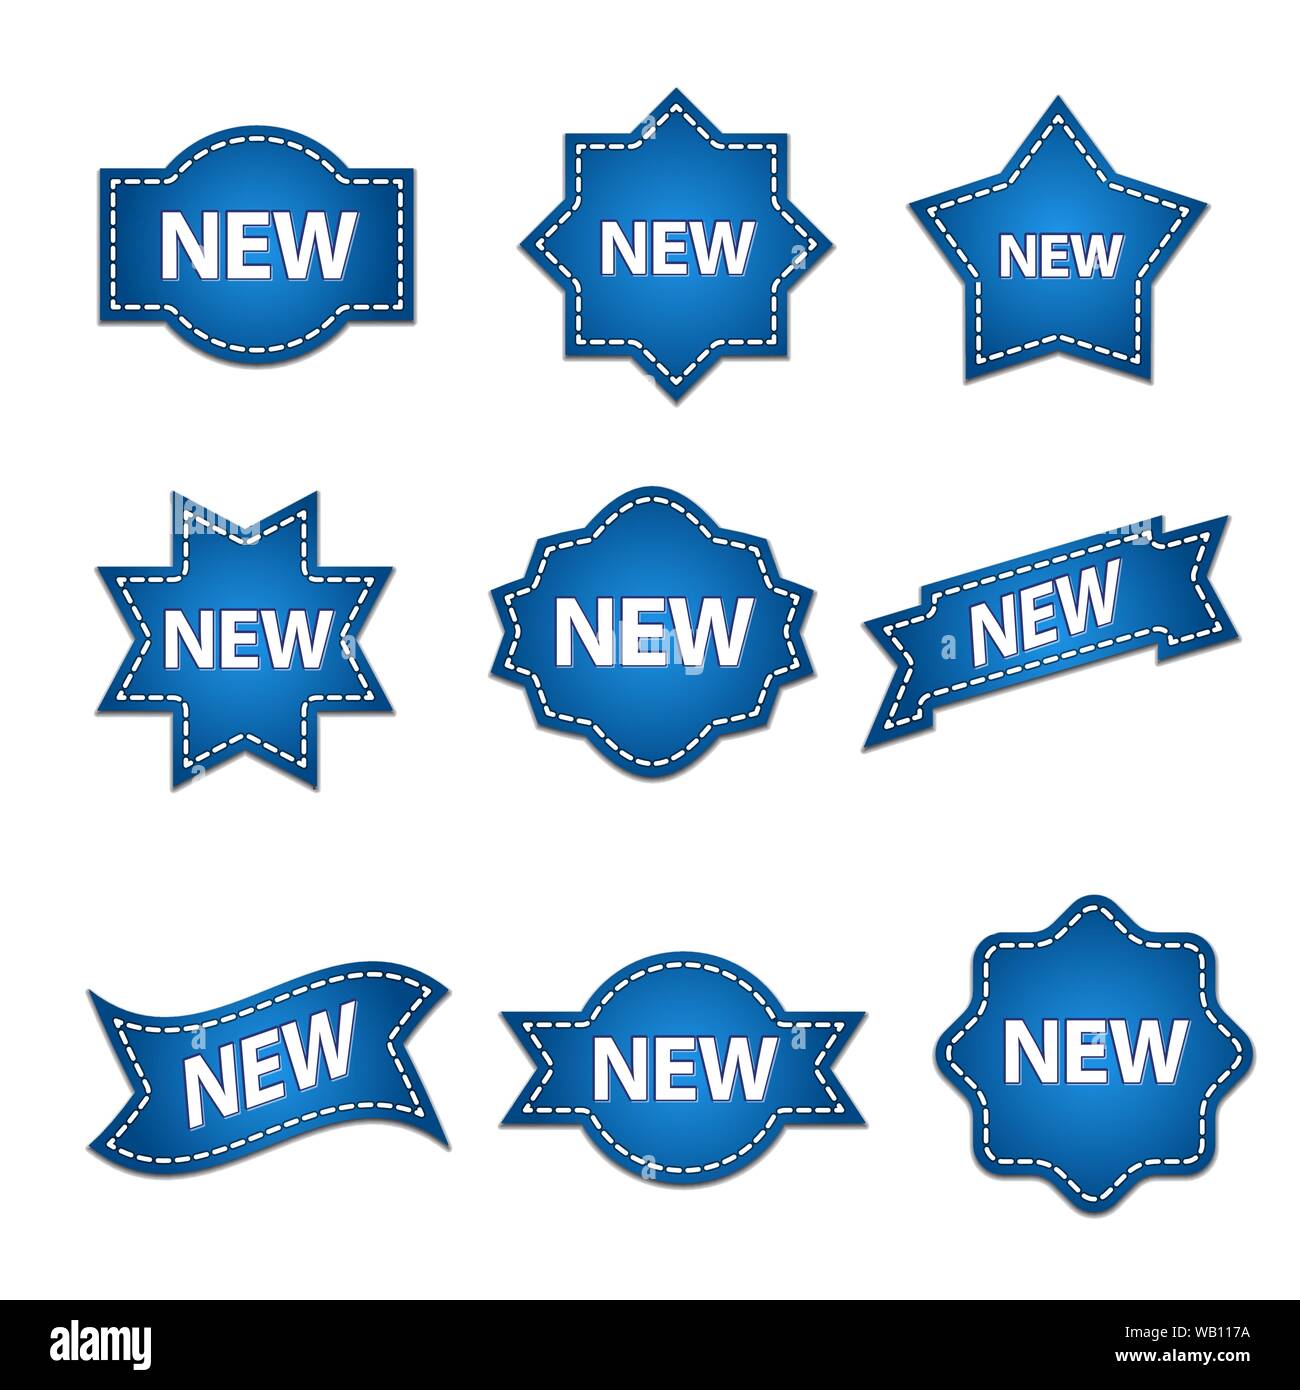 Eingestellt von Abzeichen mit kurzen, Text mit gestrichelte Linie Vektor, bunt blau Werbung Aufkleber Stock Vektor